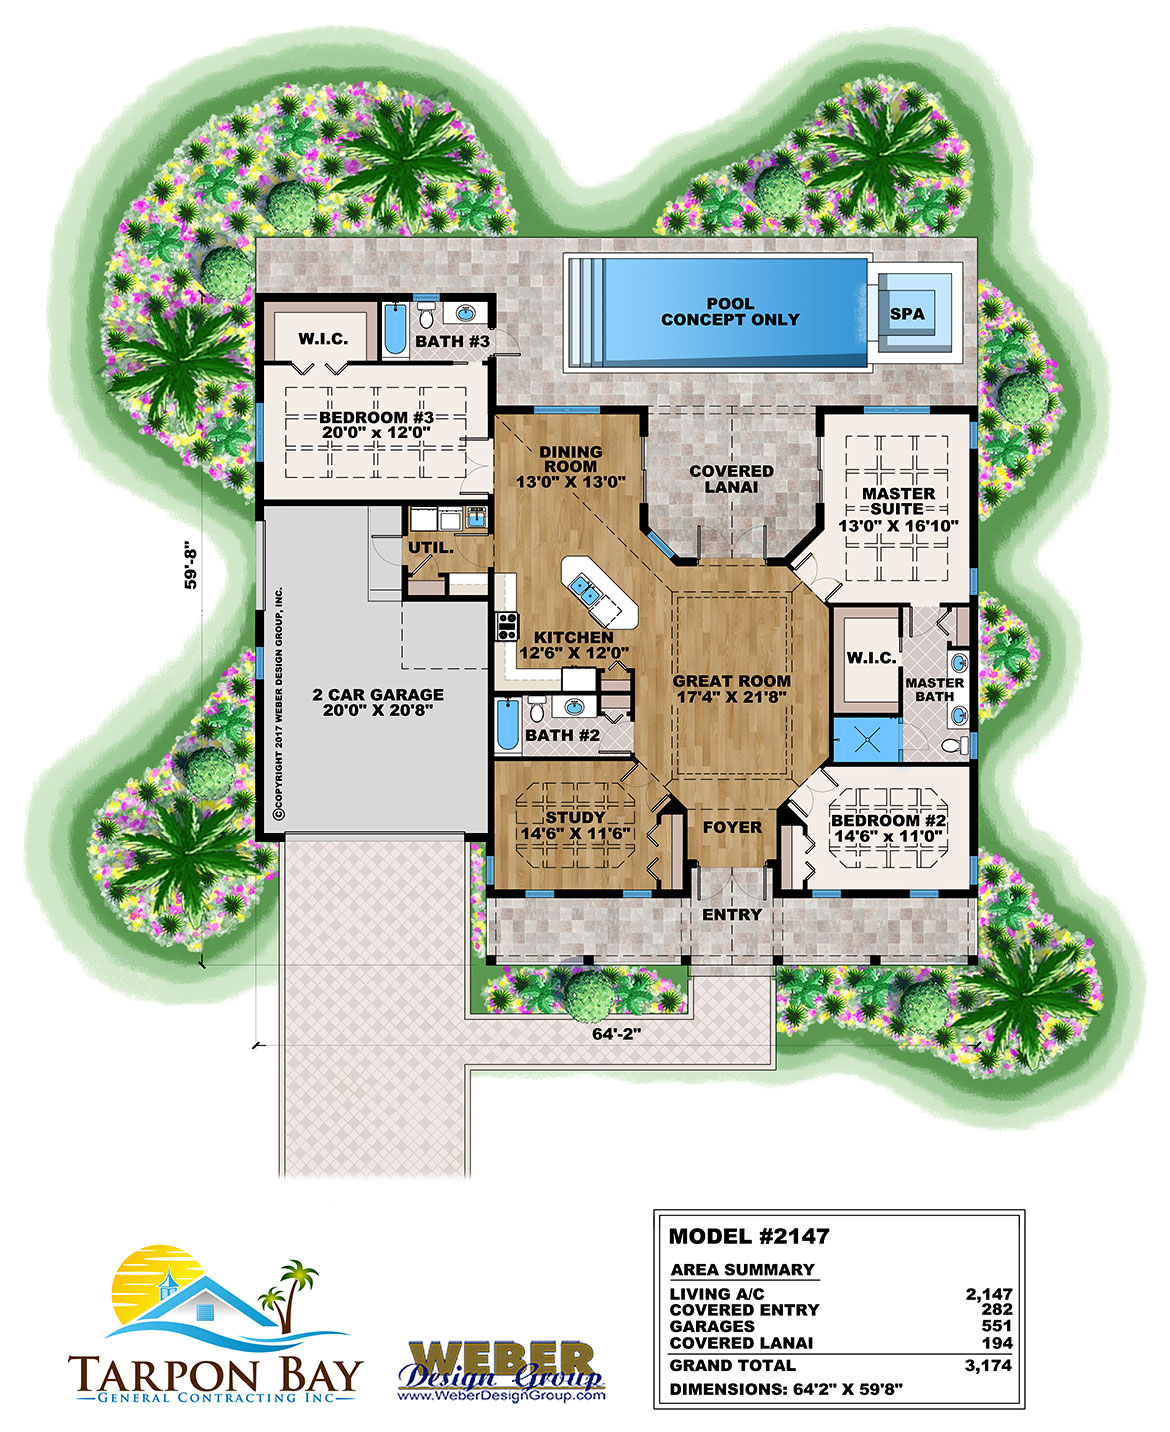 Home Model # 2147 Floor Plan